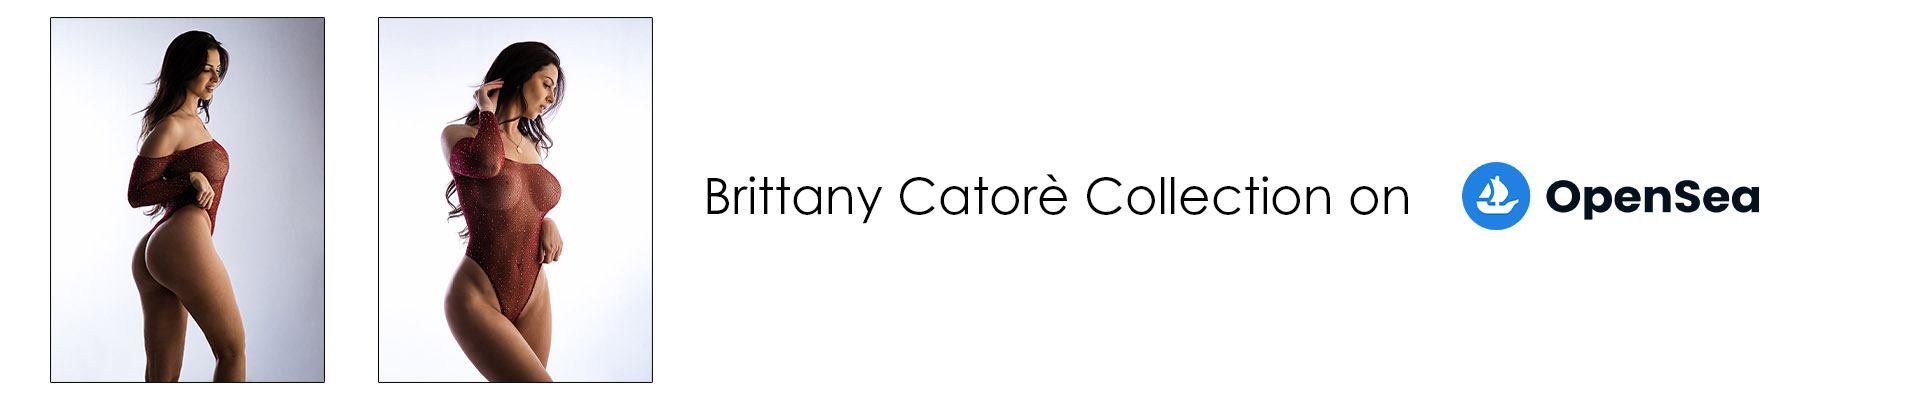 Brittany Catorè on OpenSea